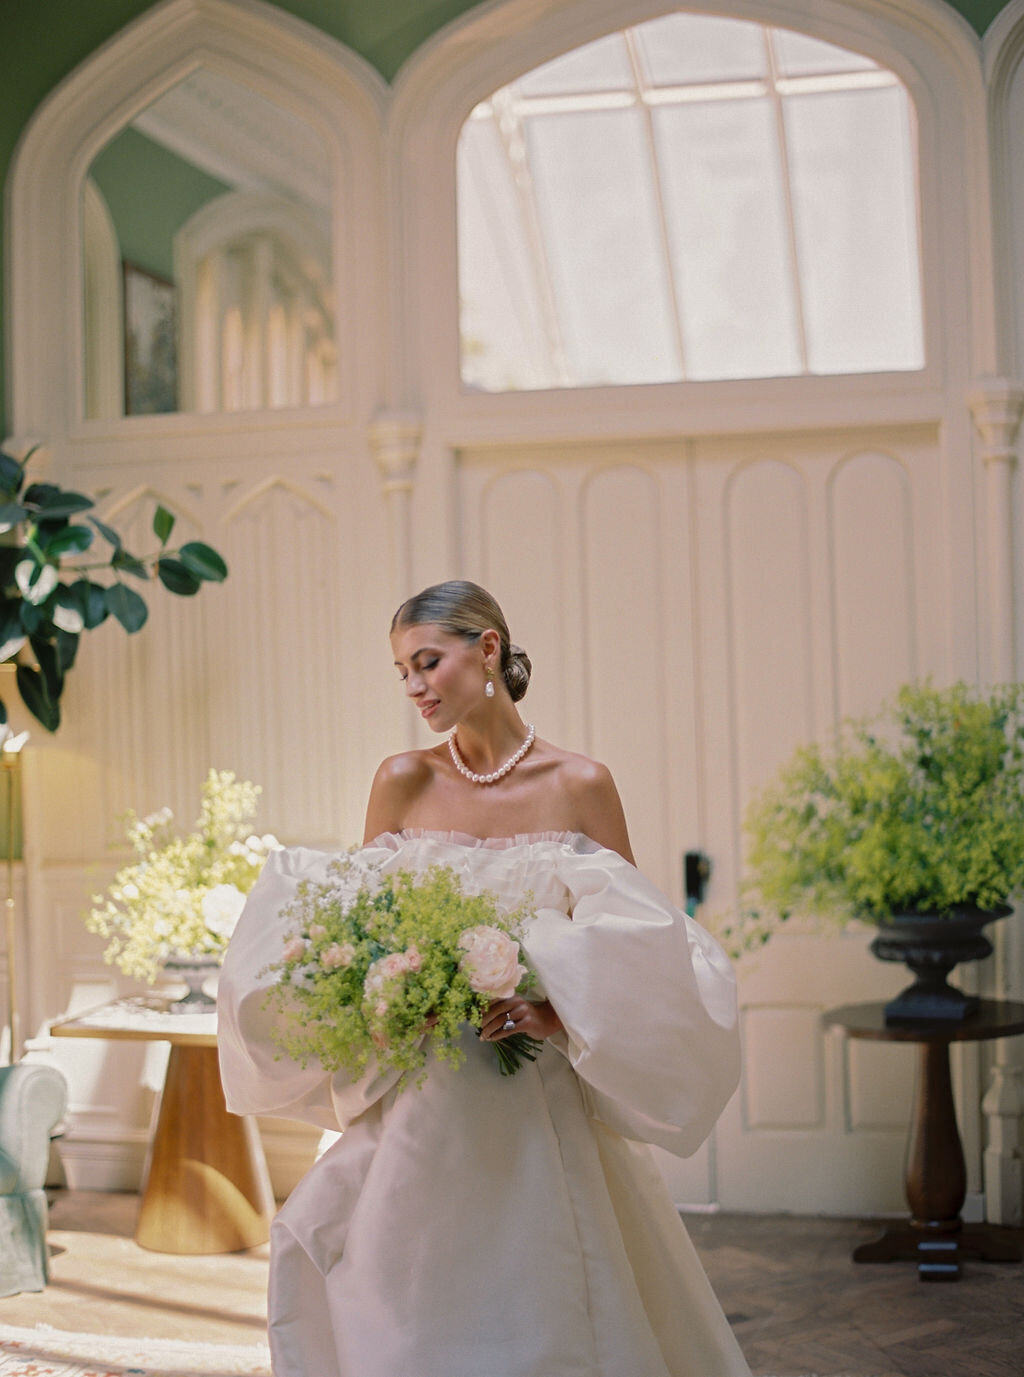 Attabara Studio UK Luxury Wedding Planners  with Katie Julia-IconicEditorial-OakleyCourt-107